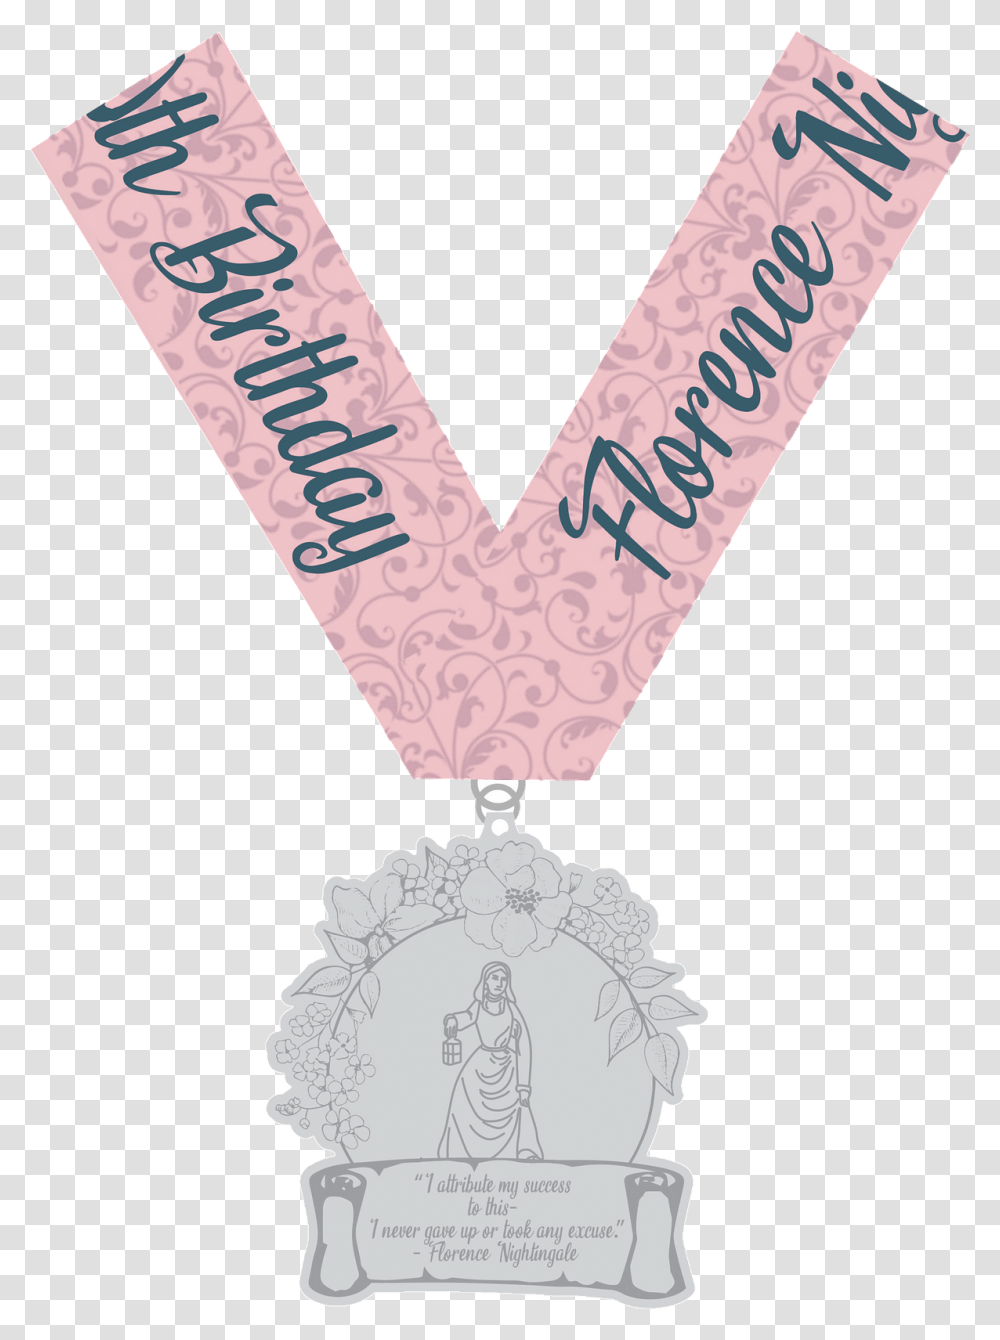 Silver Medal, Sash, Trophy Transparent Png